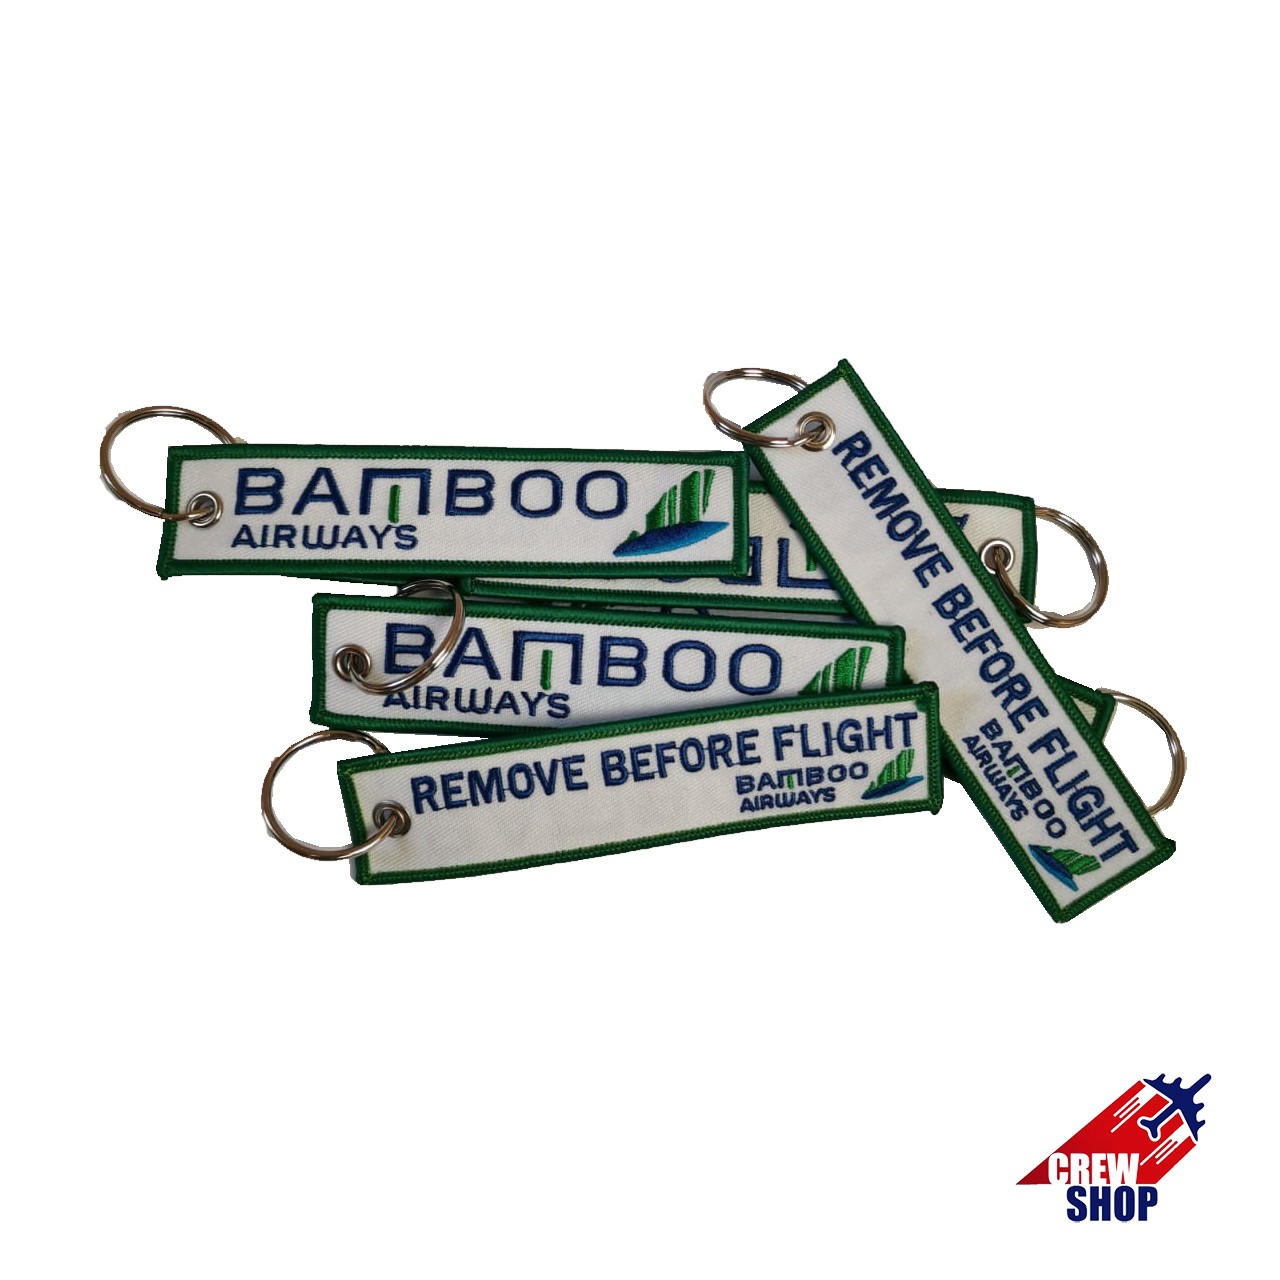 BAMBOO AIRWAYS-REMOVE BEFORE FLIGHT